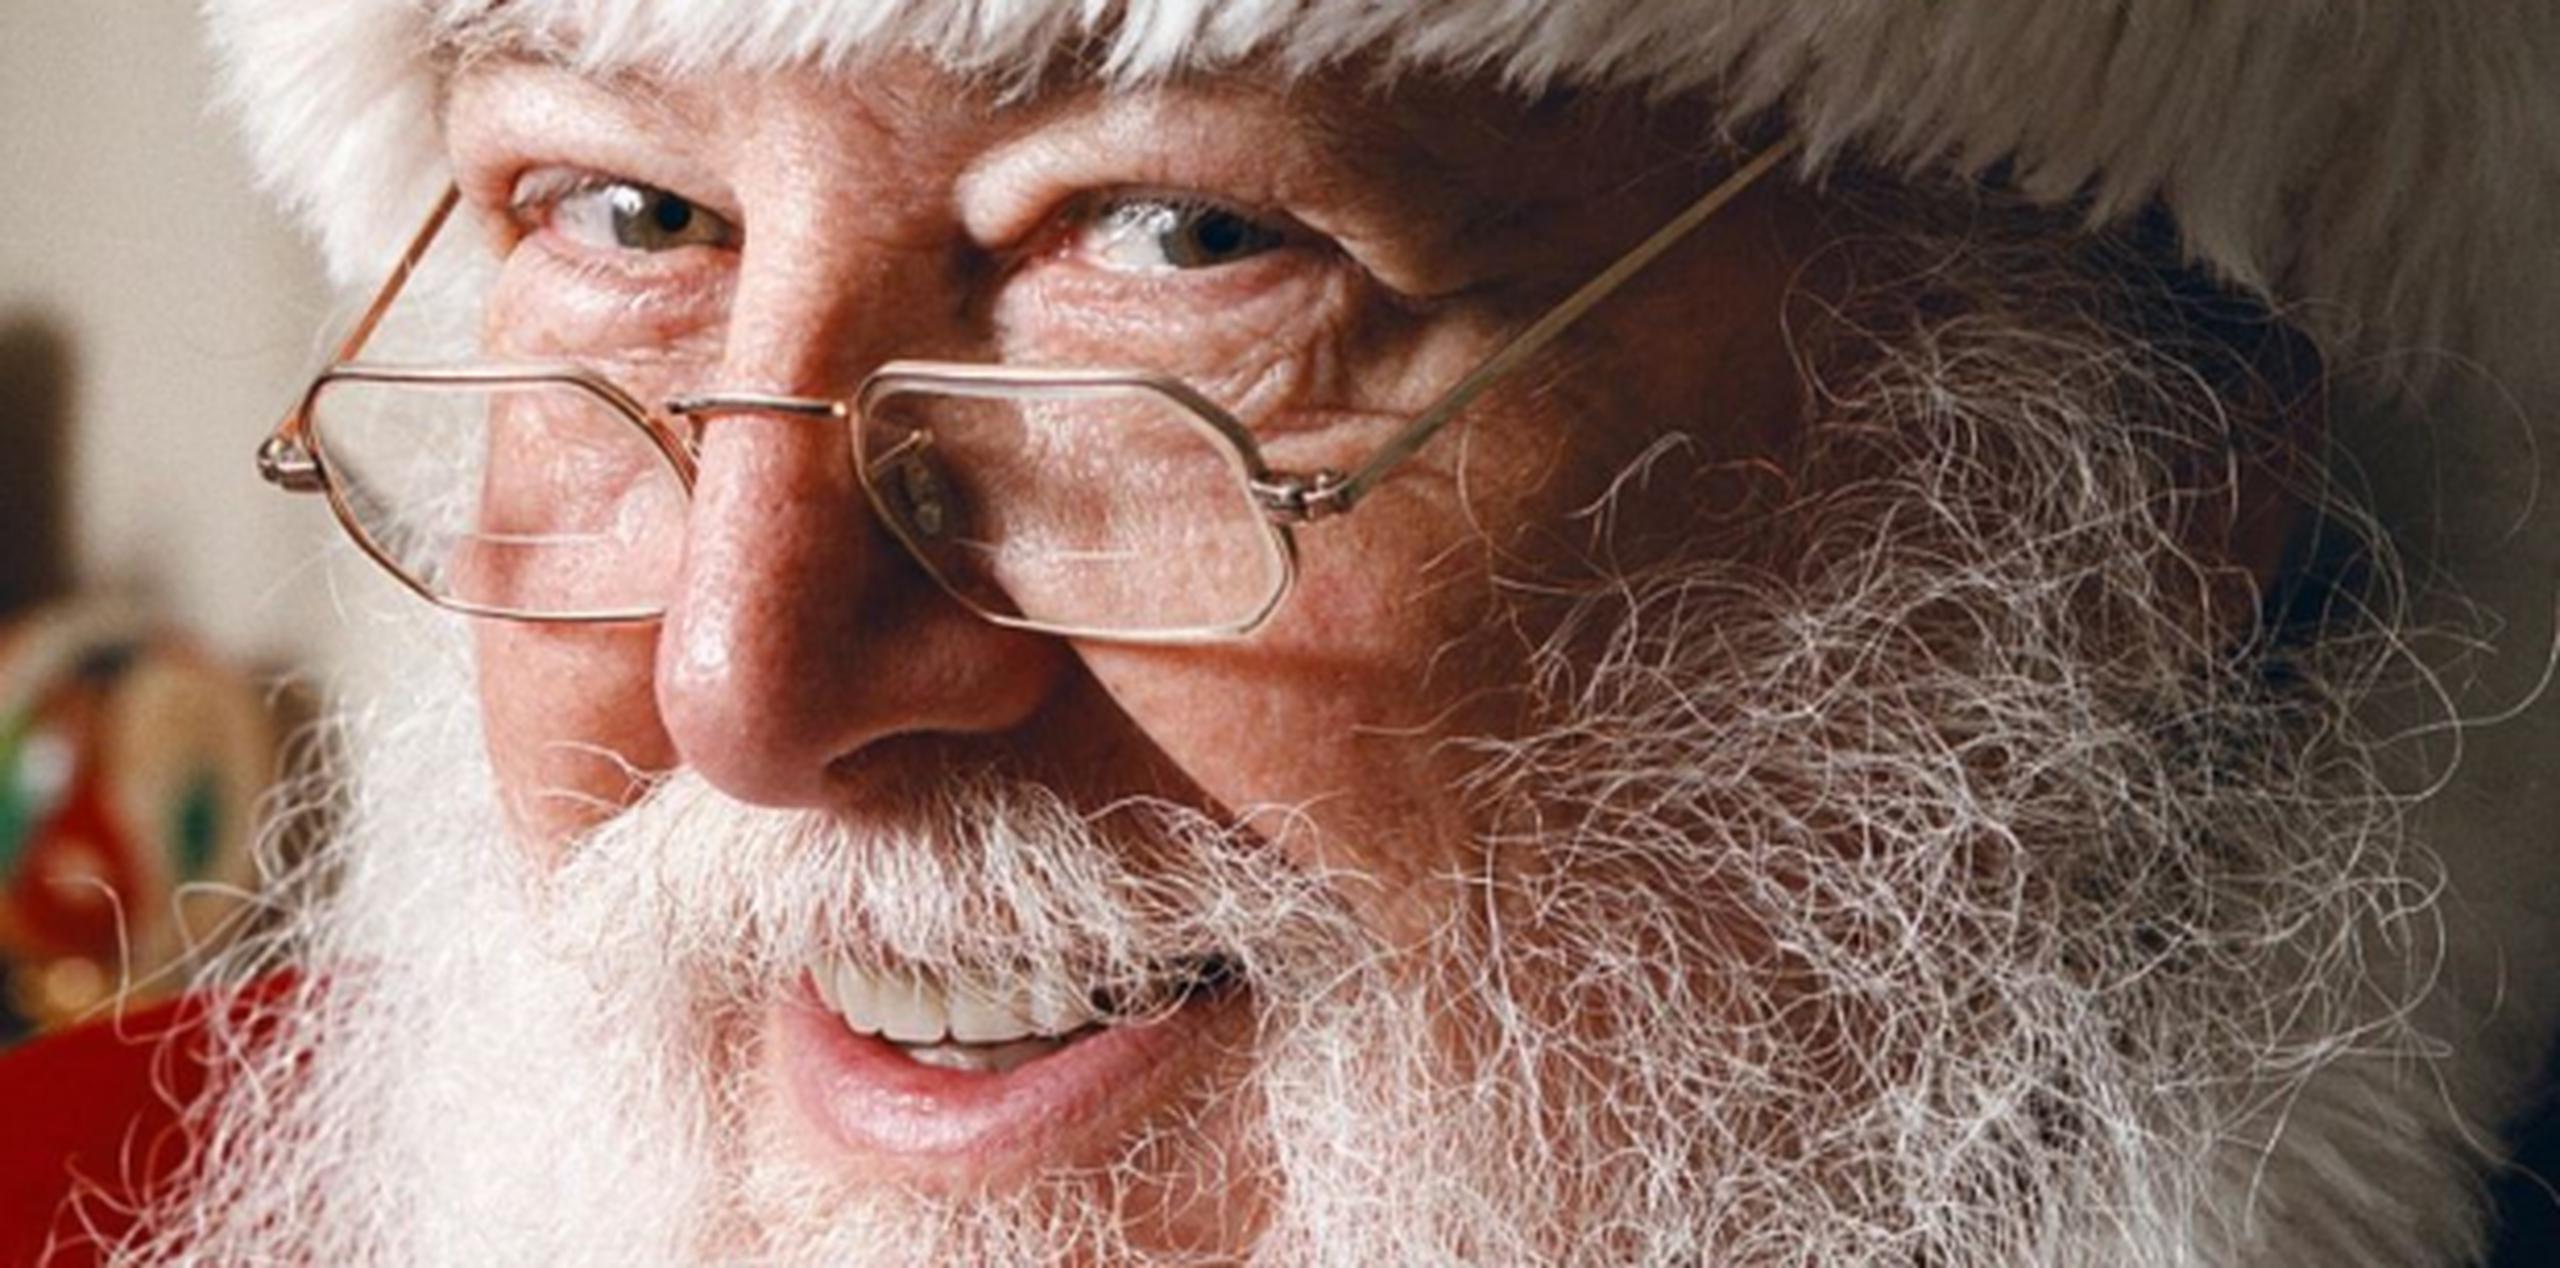 Ya Santa salió de su casa en Polo Norte a repartir regalos por el mundo. (Archivo)